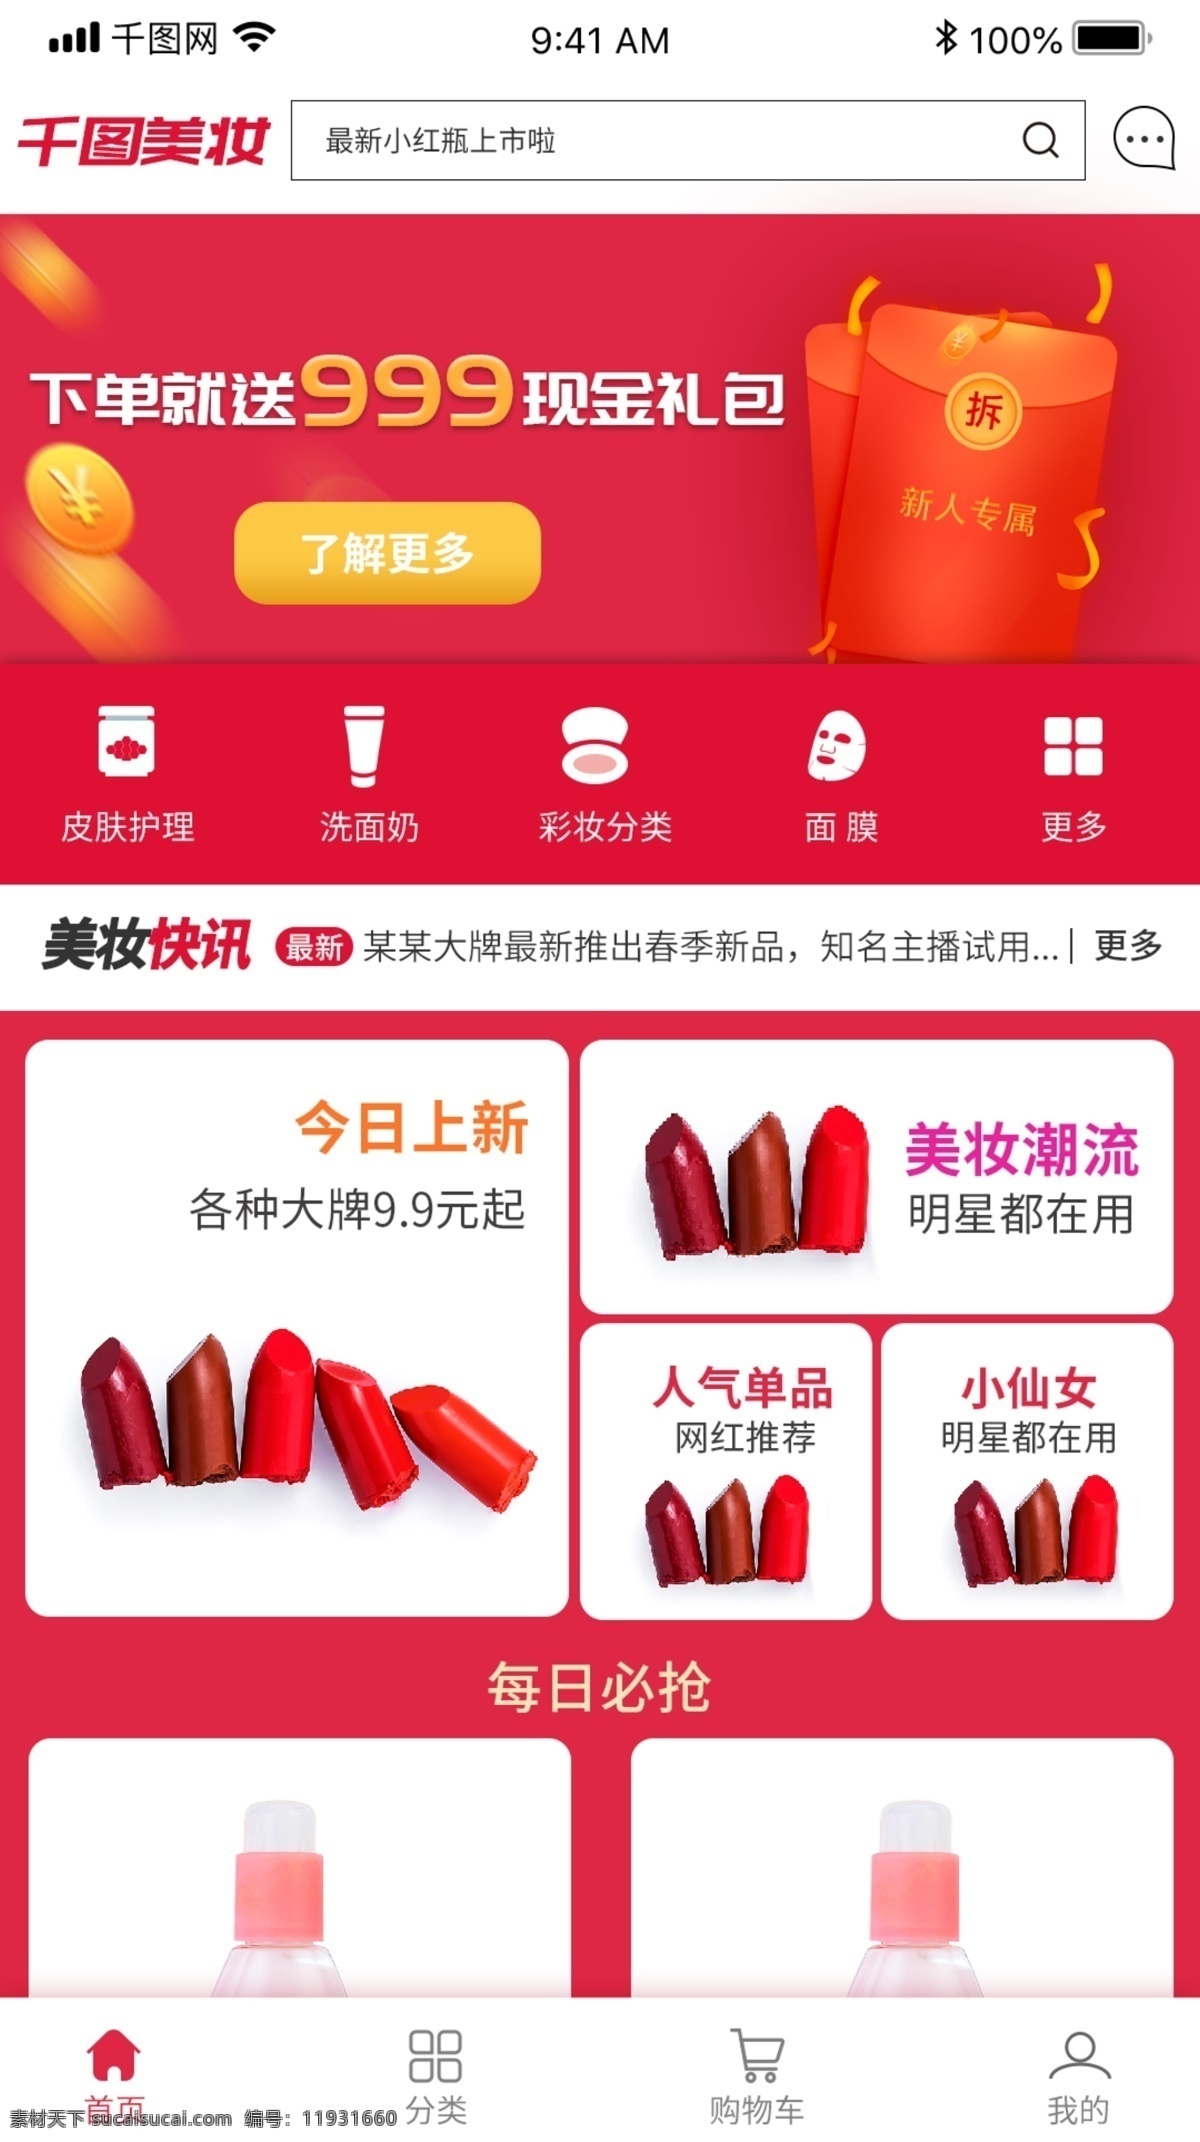 喜庆 化妆 类 商城 电商 app 小 程序 首页 红色 化妆类 小程序 手机 ui